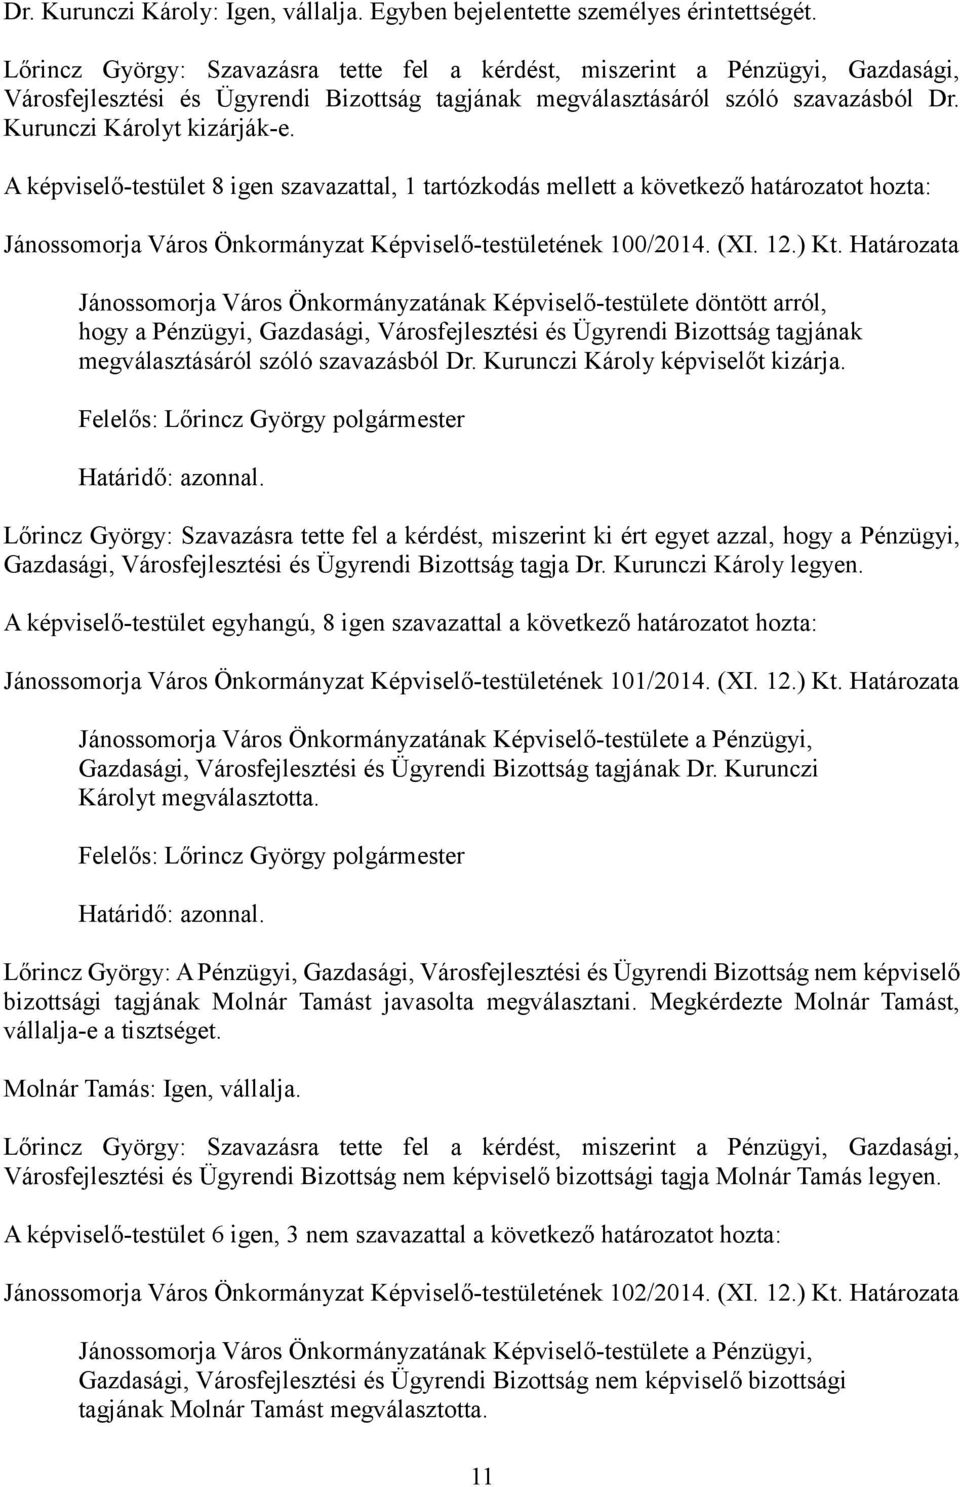 A képviselő-testület 8 igen szavazattal, 1 tartózkodás mellett a következő határozatot hozta: Jánossomorja Város Önkormányzat Képviselő-testületének 100/2014. (XI. 12.) Kt.